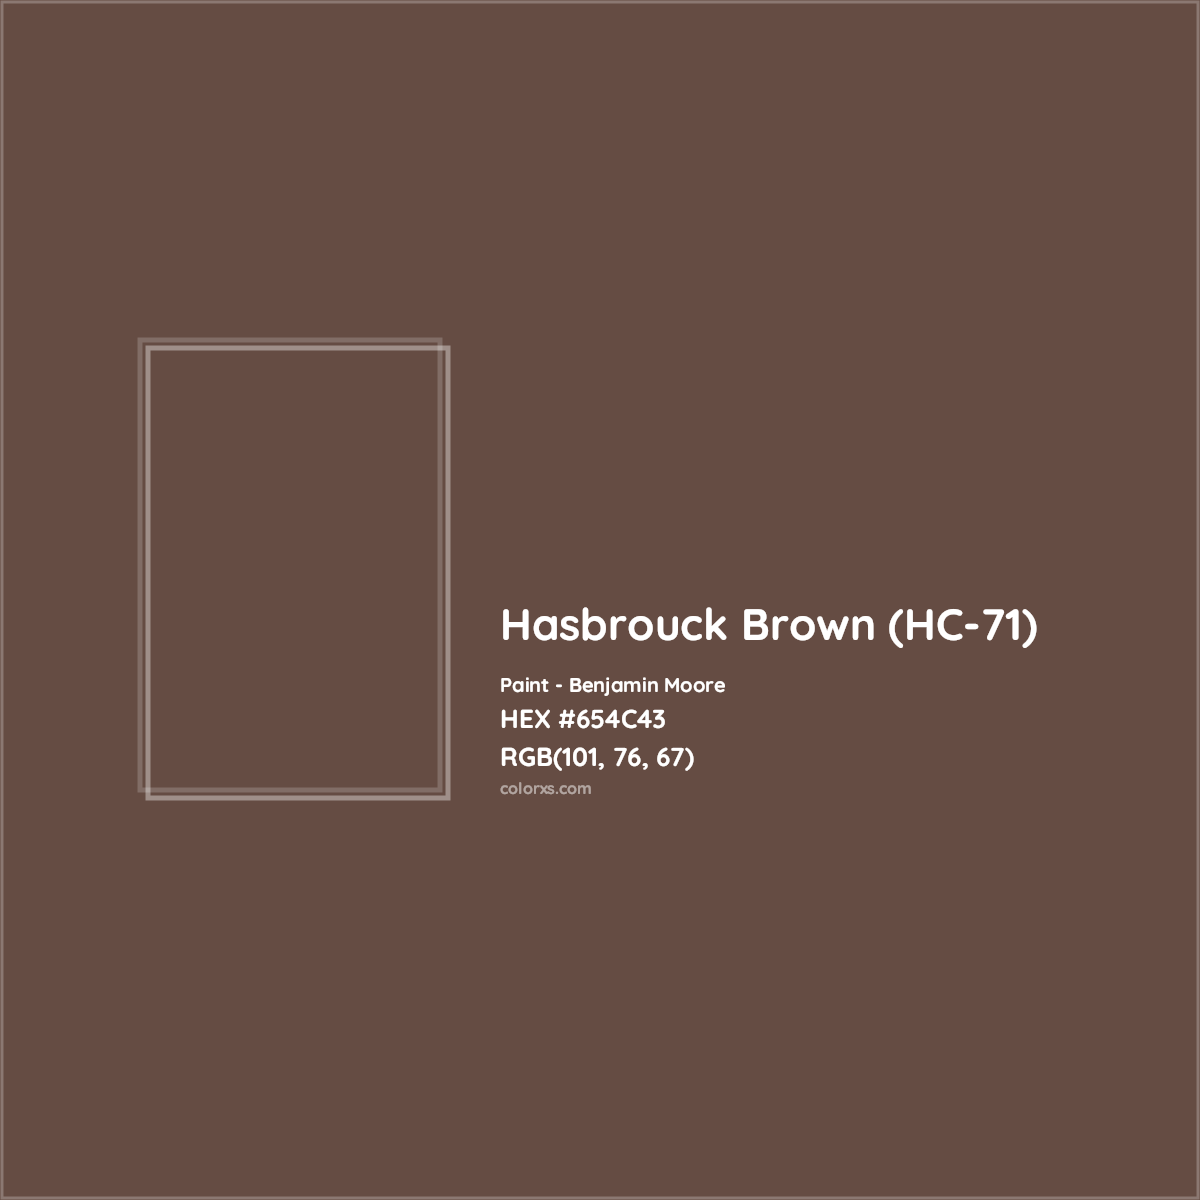 HEX #654C43 Hasbrouck Brown (HC-71) Paint Benjamin Moore - Color Code